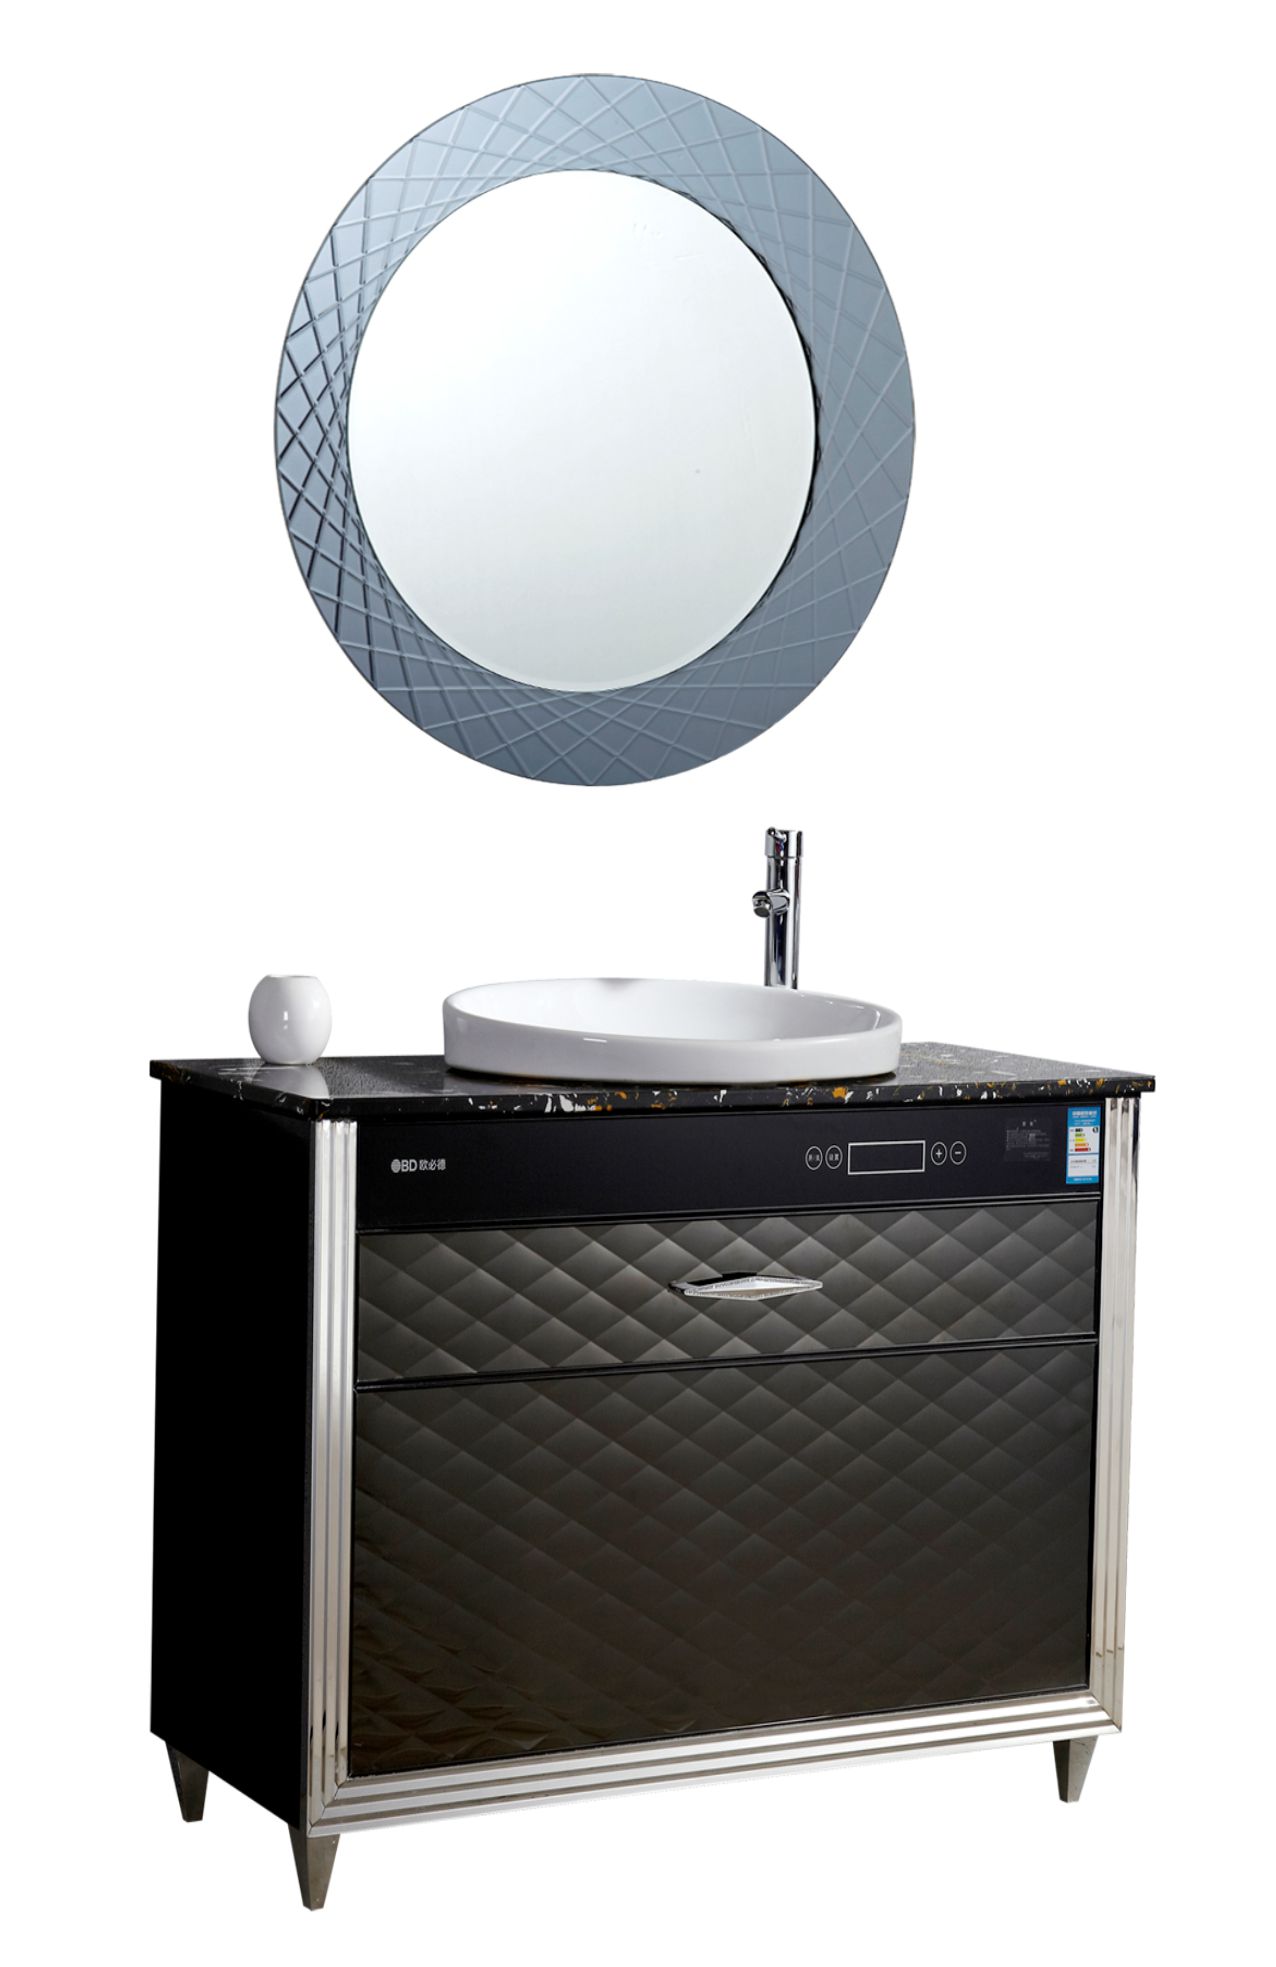 欧必德浴室柜集成热水器 不挂墙的热水器更安全 热水即开即用